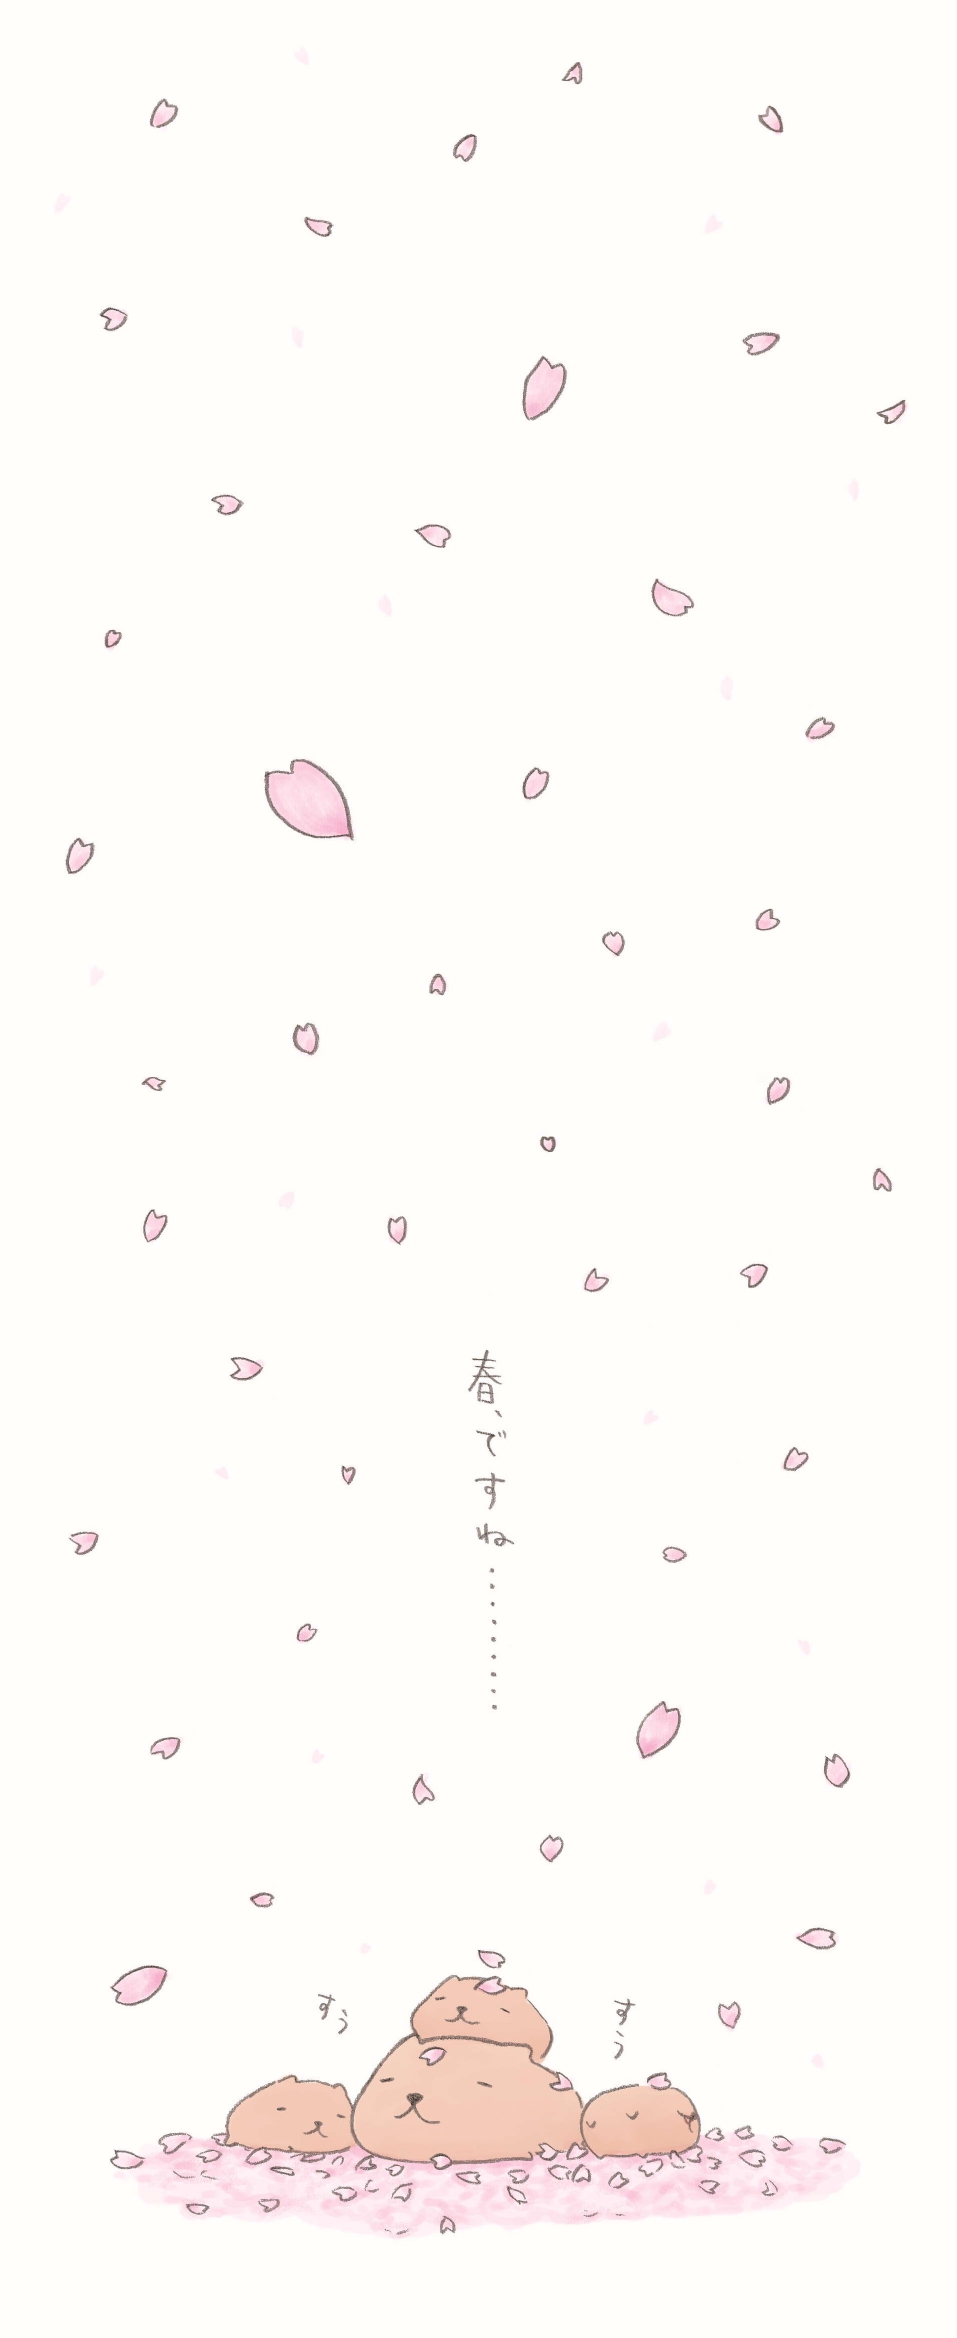 カピバラさんのまいにち 桜ふぶき 無料で読める漫画 ４コマサイト パチクリ